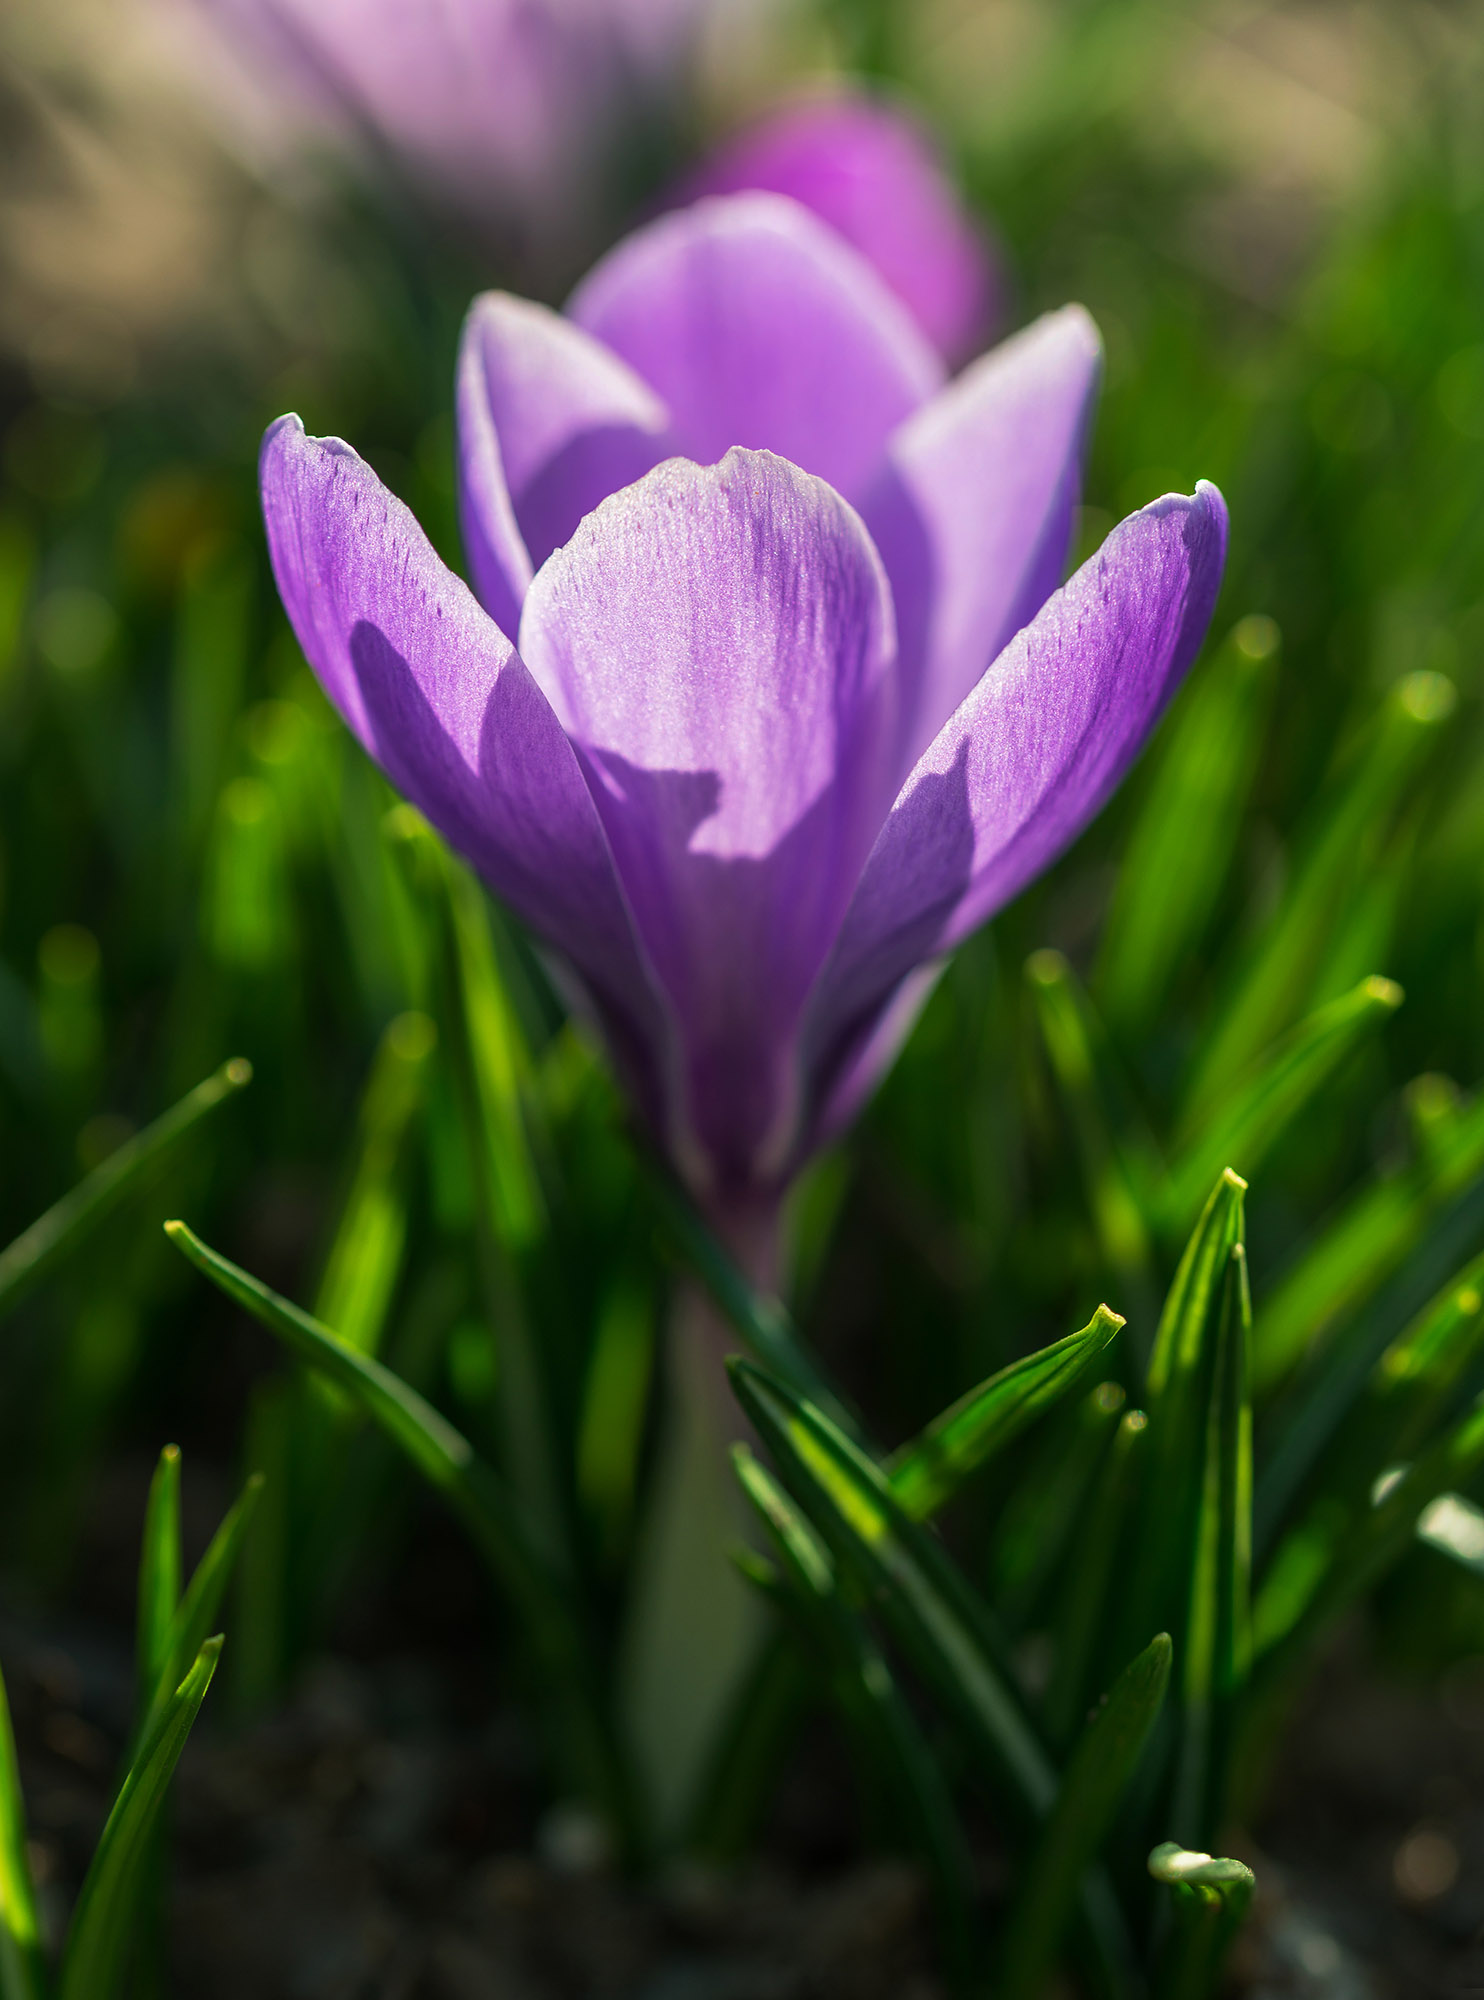 Saffron flower in the spring